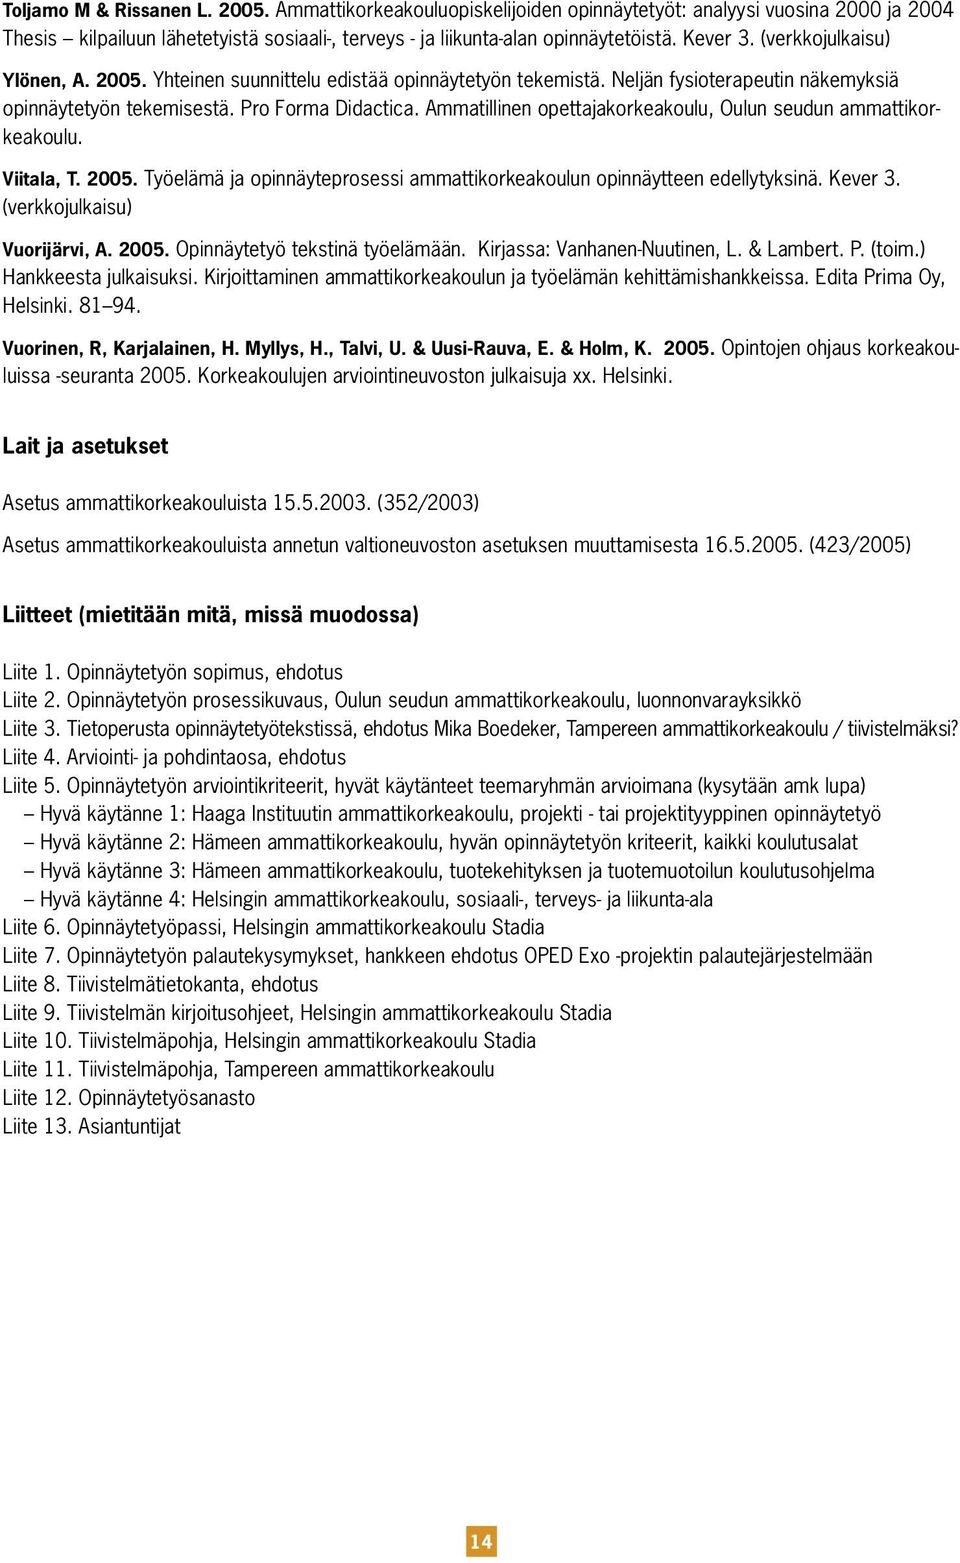 Ammatillinen opettajakorkeakoulu, Oulun seudun ammattikorkeakoulu. Viitala, T. 2005. Työelämä ja opinnäyteprosessi ammattikorkeakoulun opinnäytteen edellytyksinä. Kever 3.